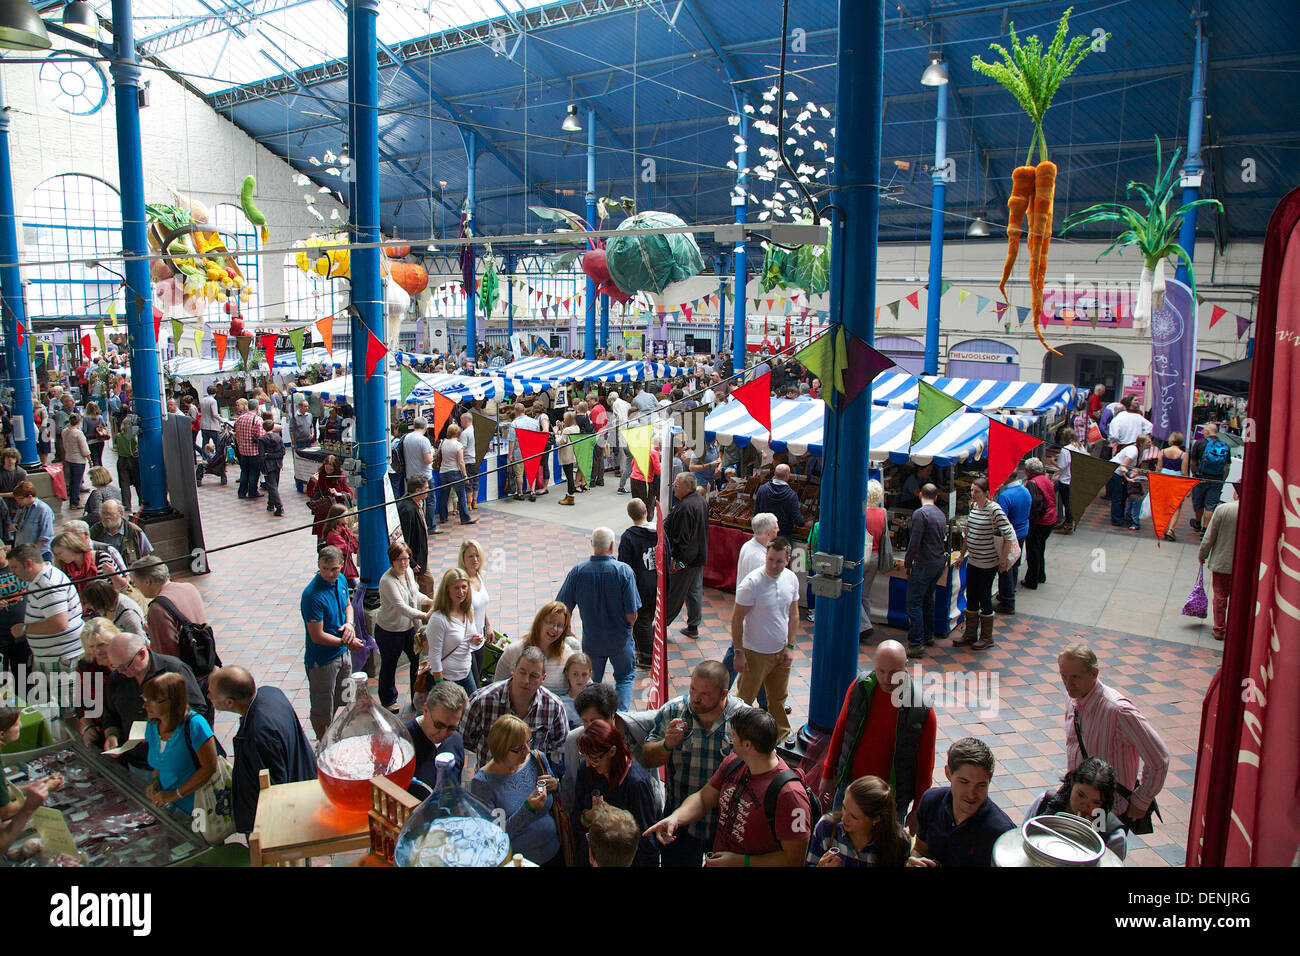 Market Hall at Abergavenny Food Festival Stock Photo